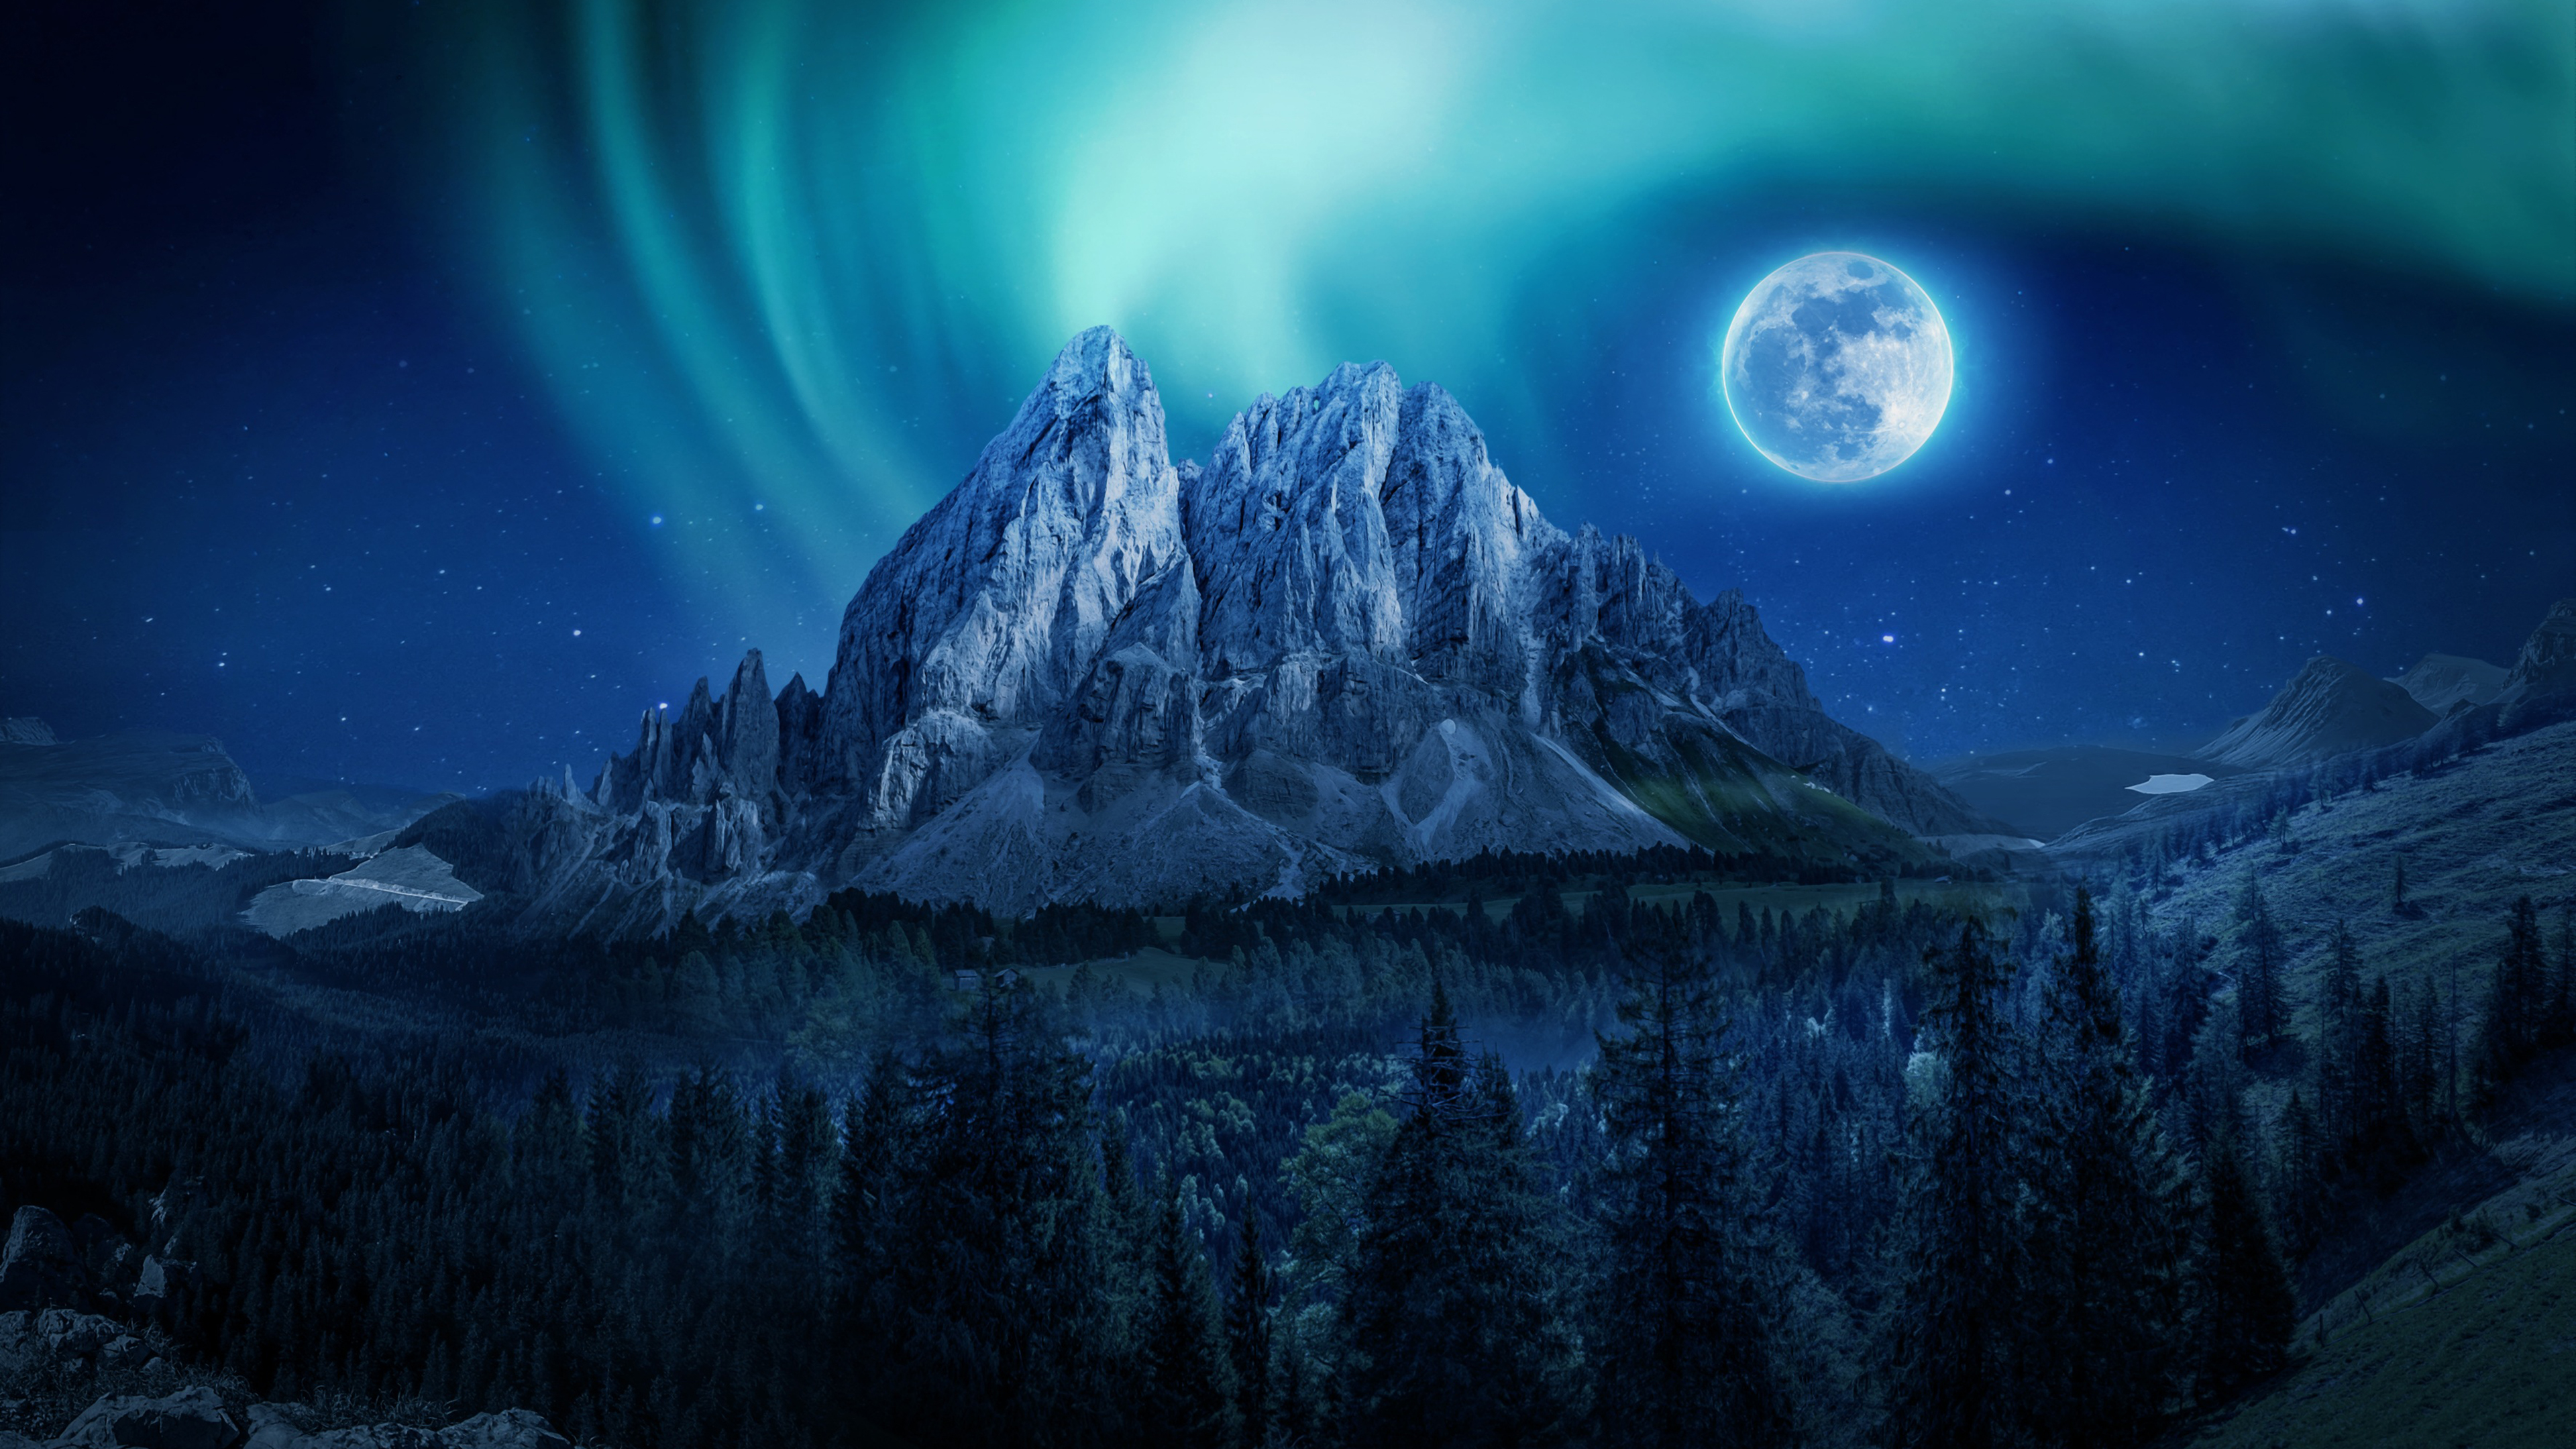 Mountain Moon Nightscape 4k Mountain Aurora Borealis 3840x2160 Wallpaper Teahub Io